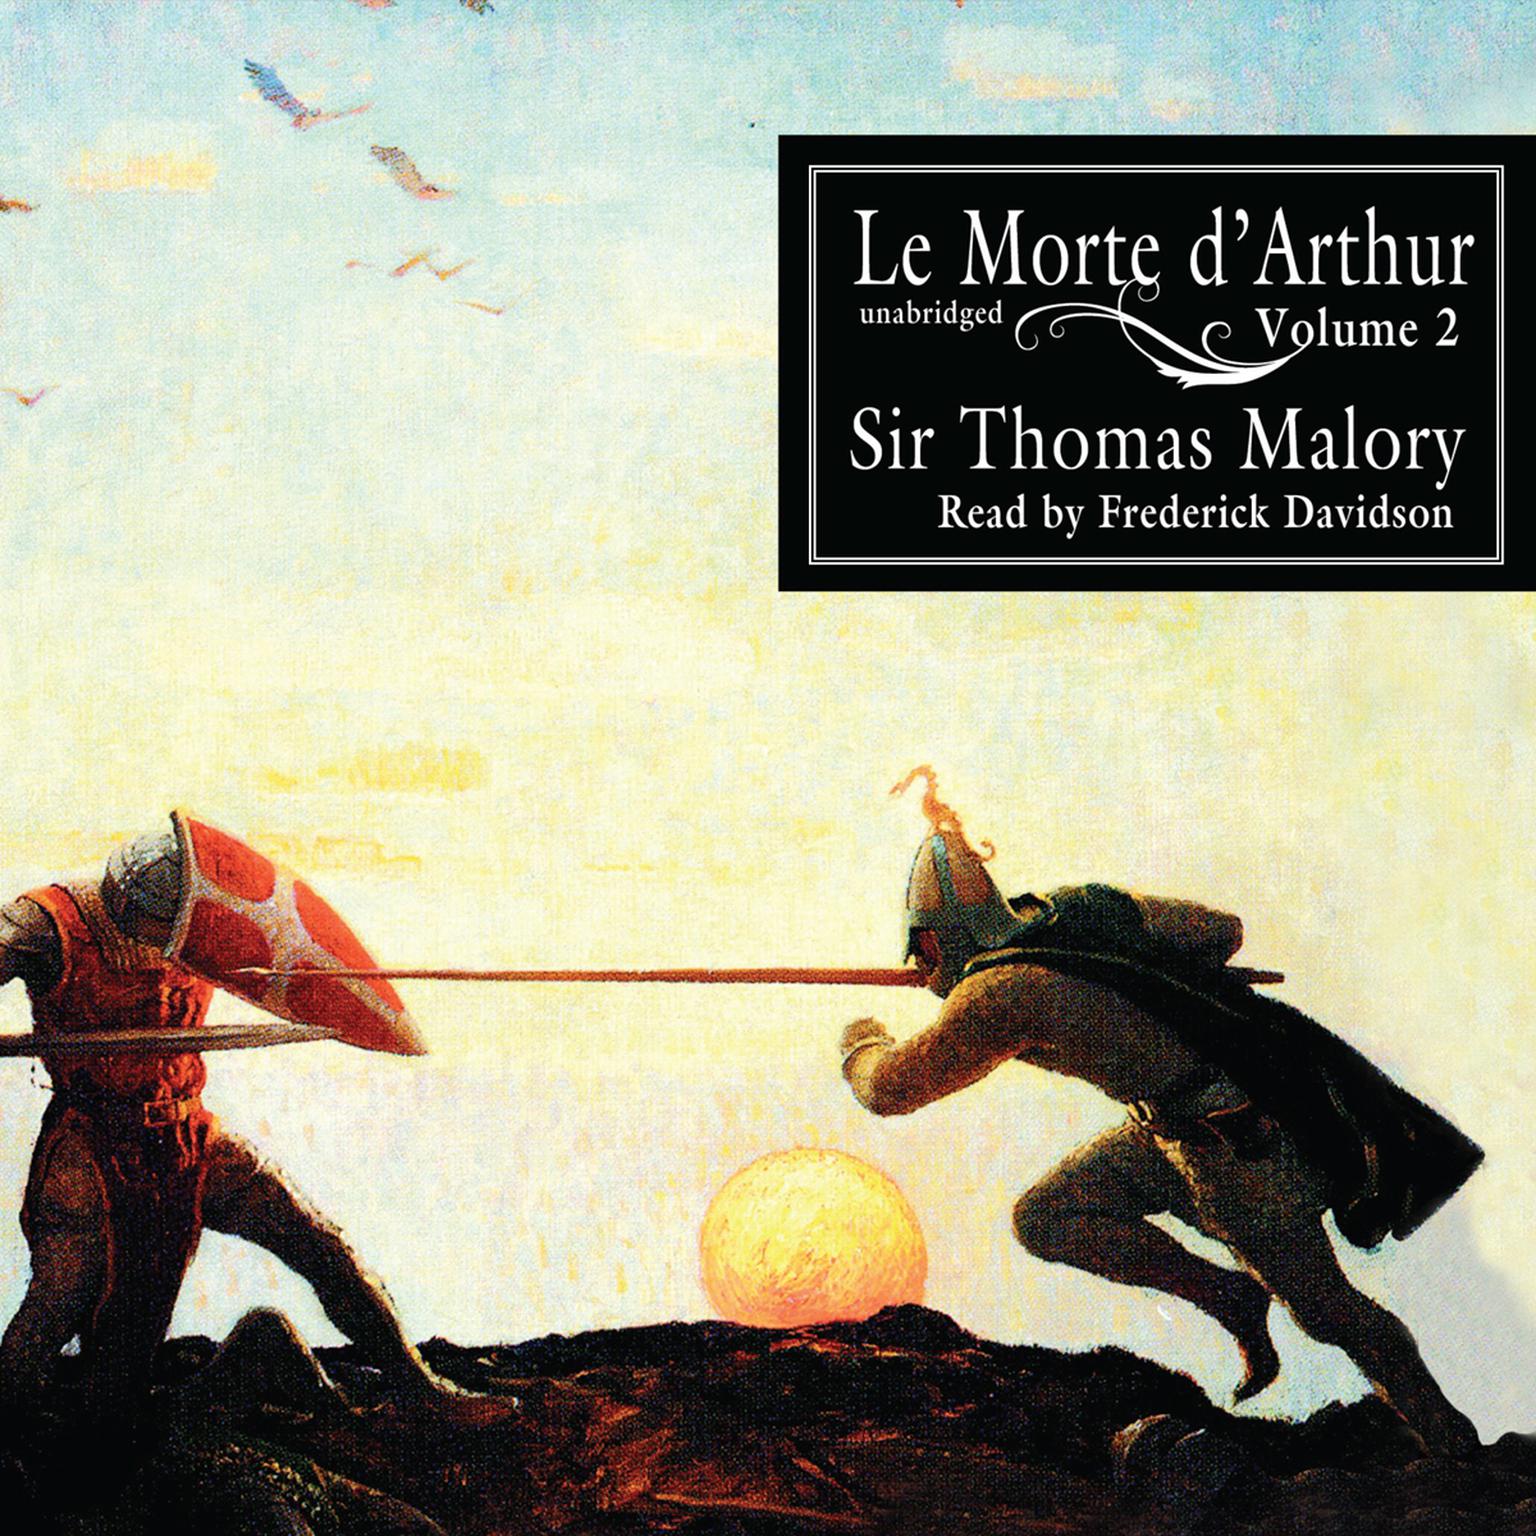 Le Morte d’Arthur, Vol. 2 Audiobook, by Thomas Malory